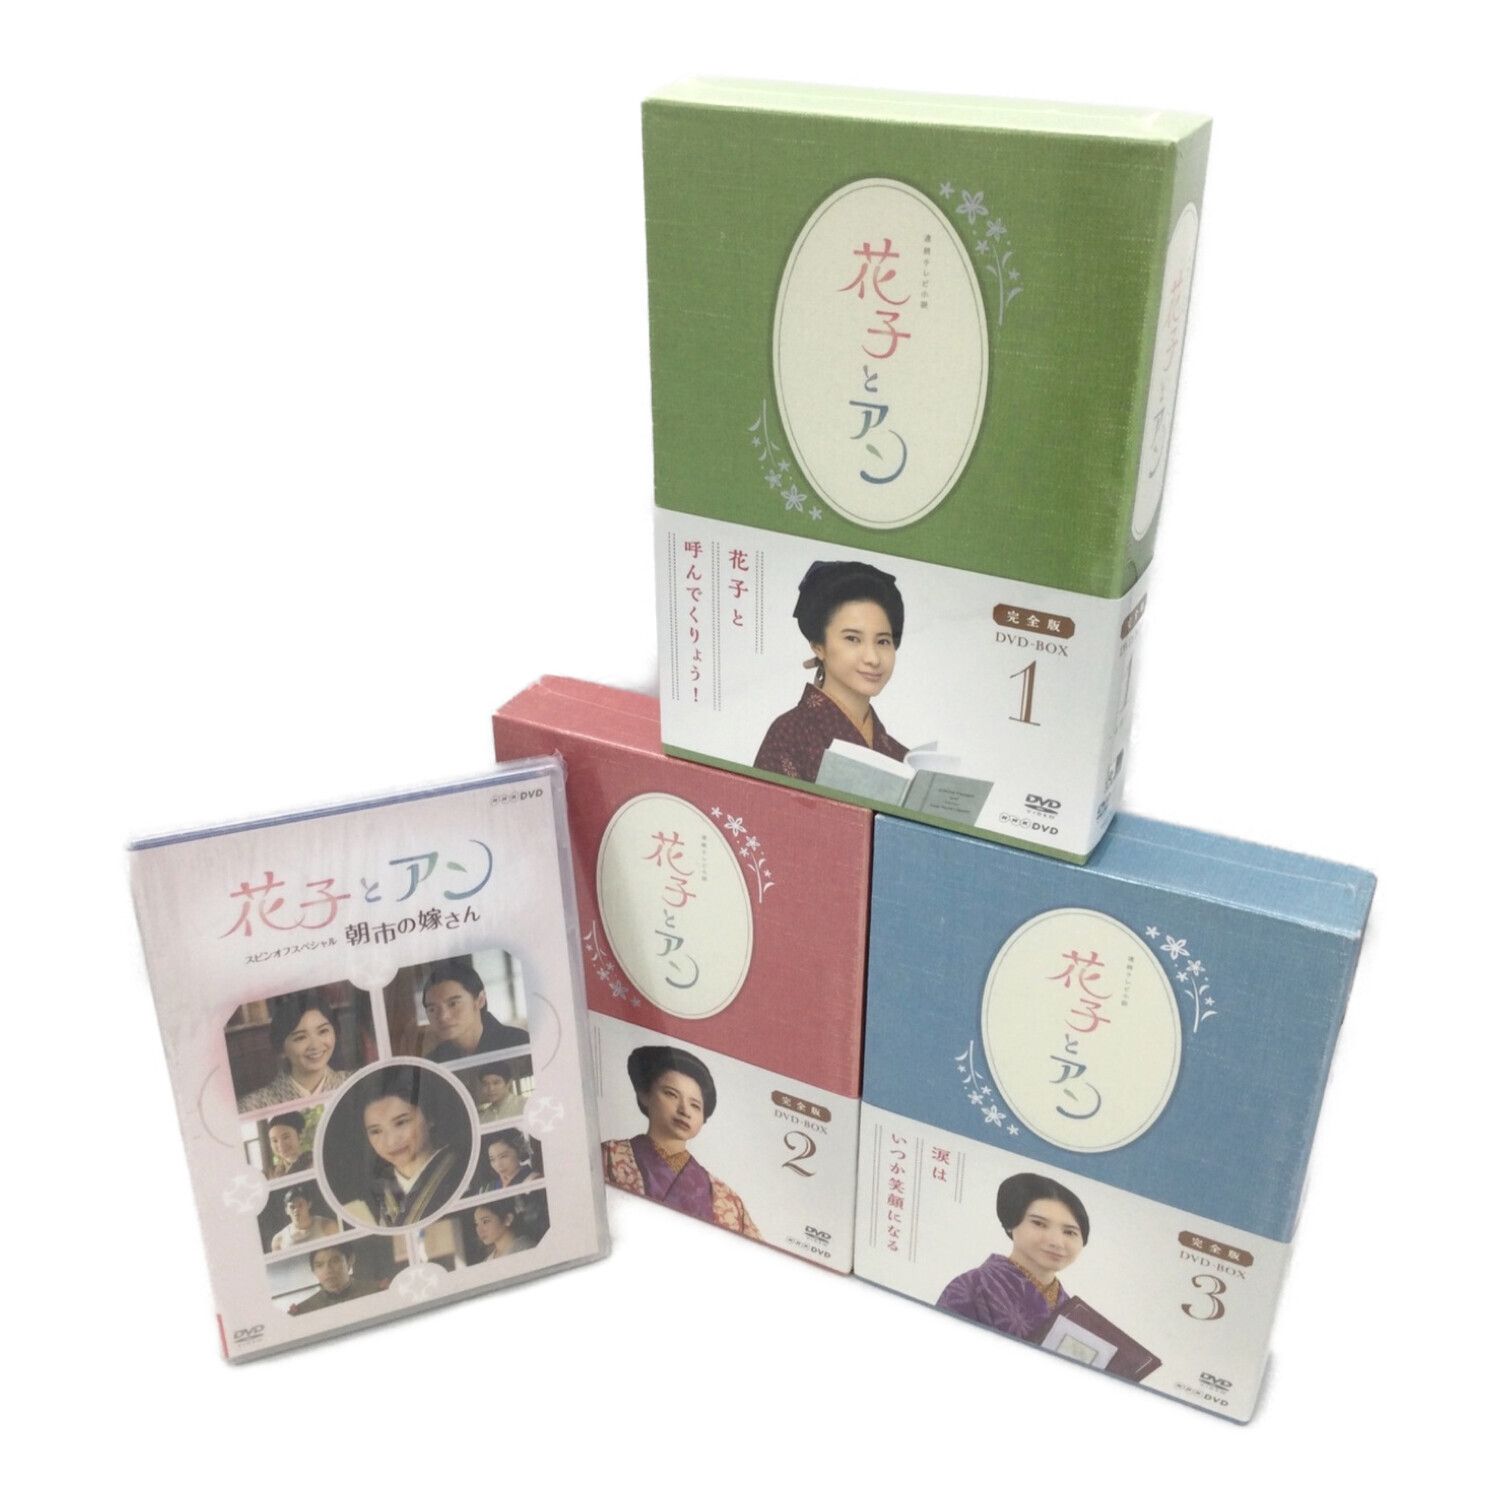 連続テレビ小説花子とアン完全版DVD-BOX全3巻セット - TVドラマ